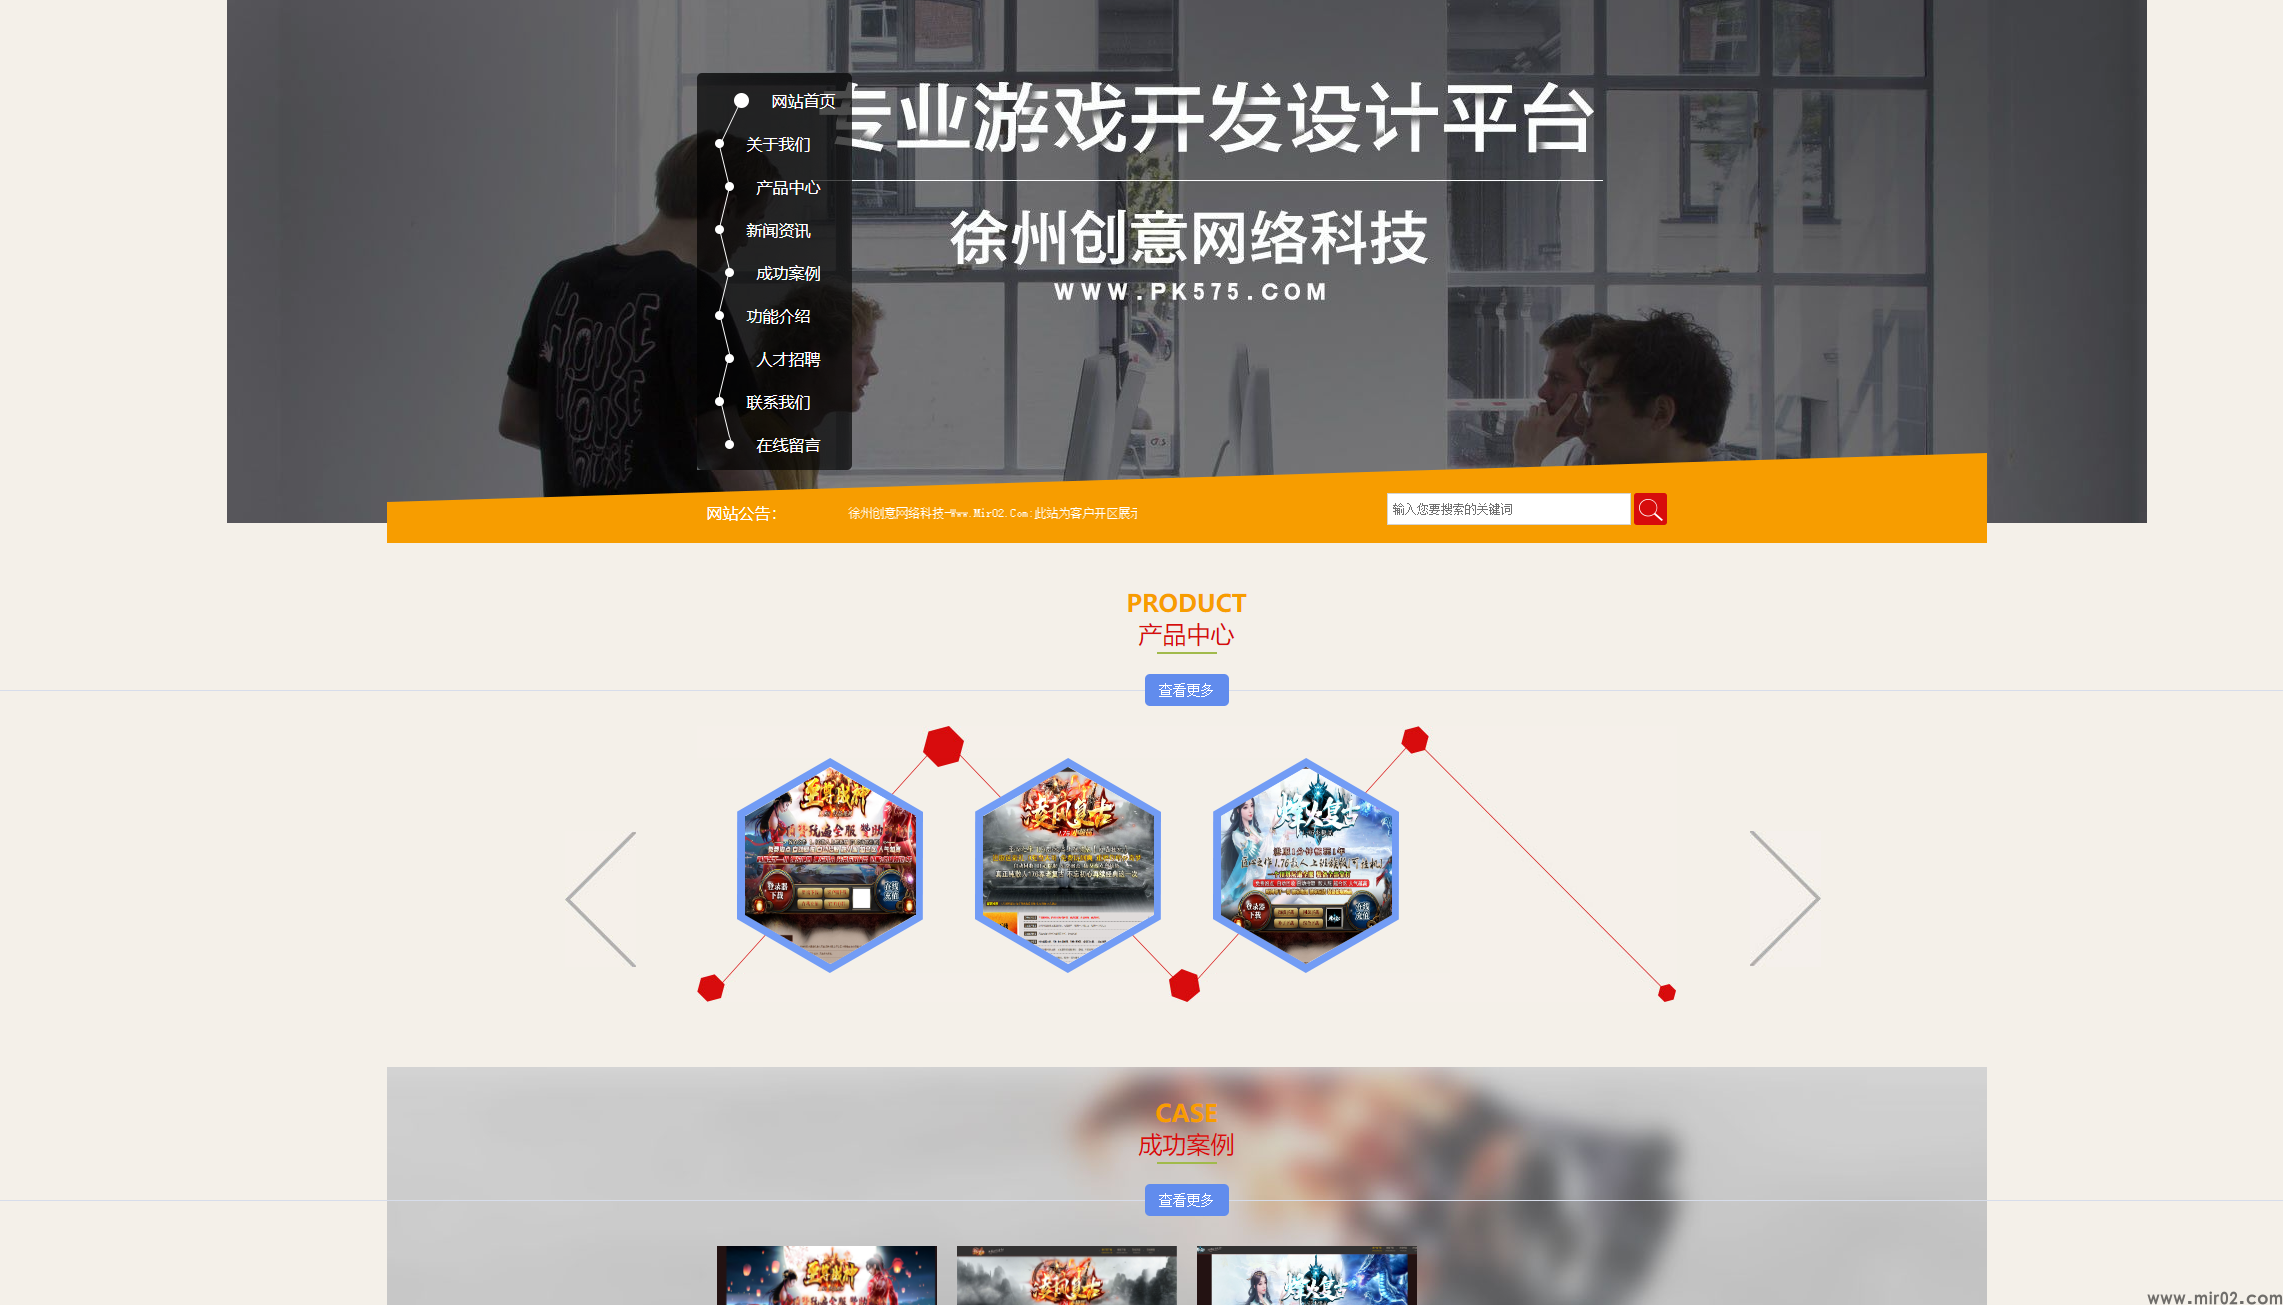 徐州创意网络科技客户展示站点